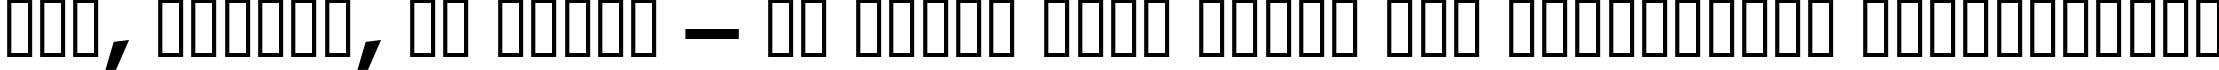 Пример написания шрифтом Kabel Bd Normal текста на украинском